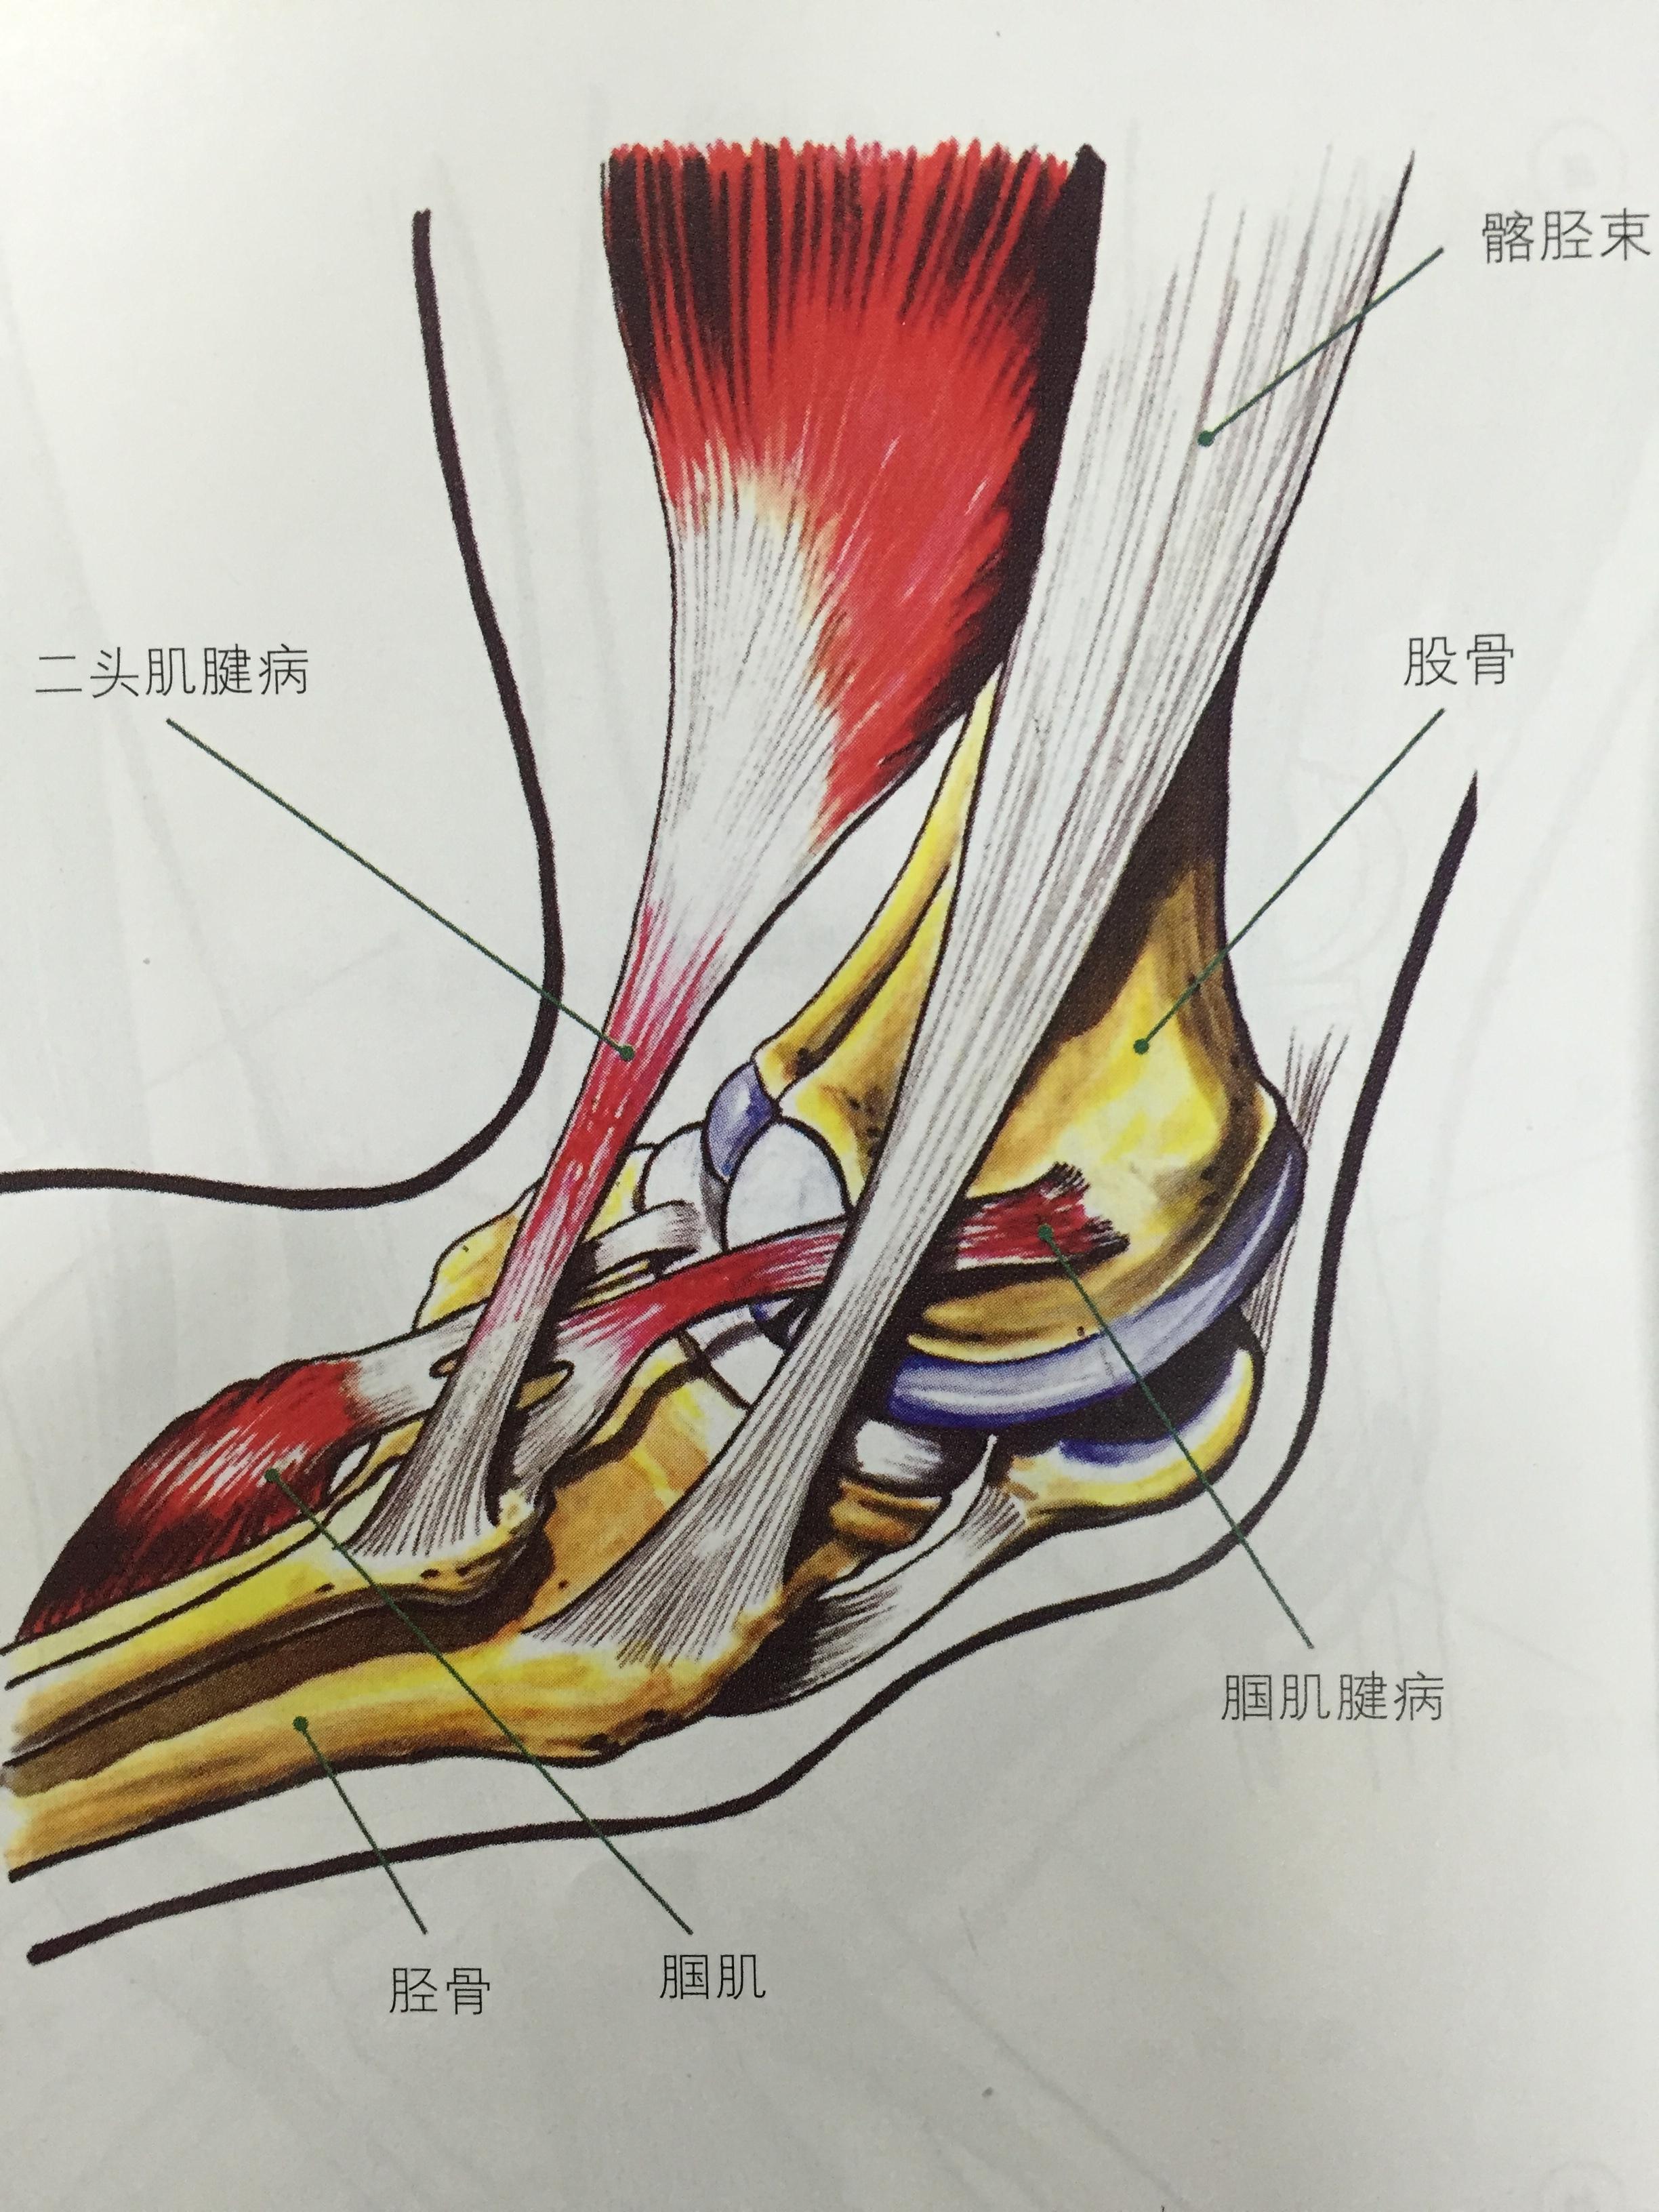 当然其他肌腱可能也会受到影响  症状判断 股二头肌腱…  显示全部